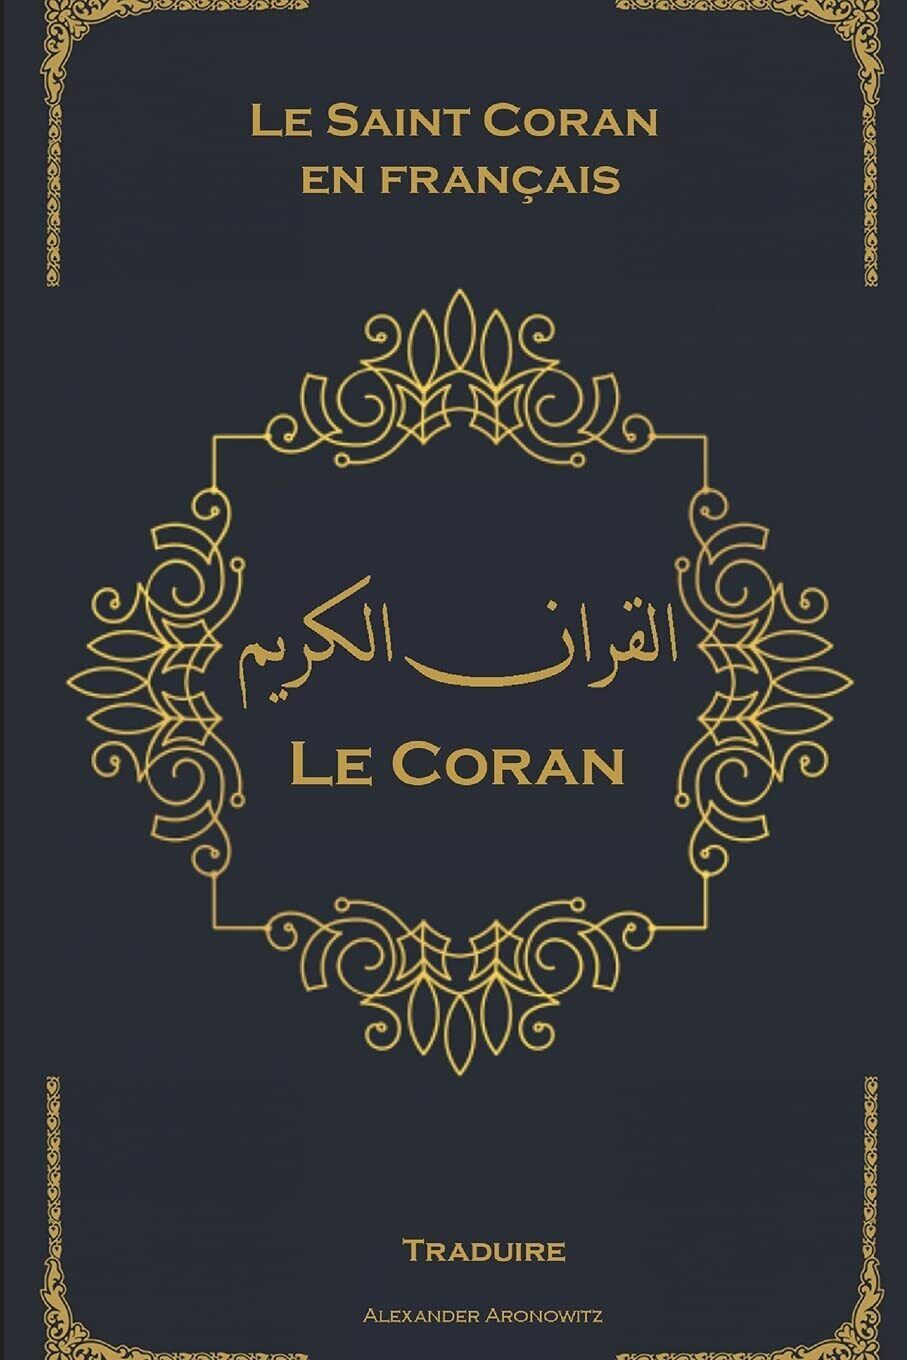 Le Coran Le Saint Coran en fran?ais - Clair et facile ? lire di Allah (god),  20